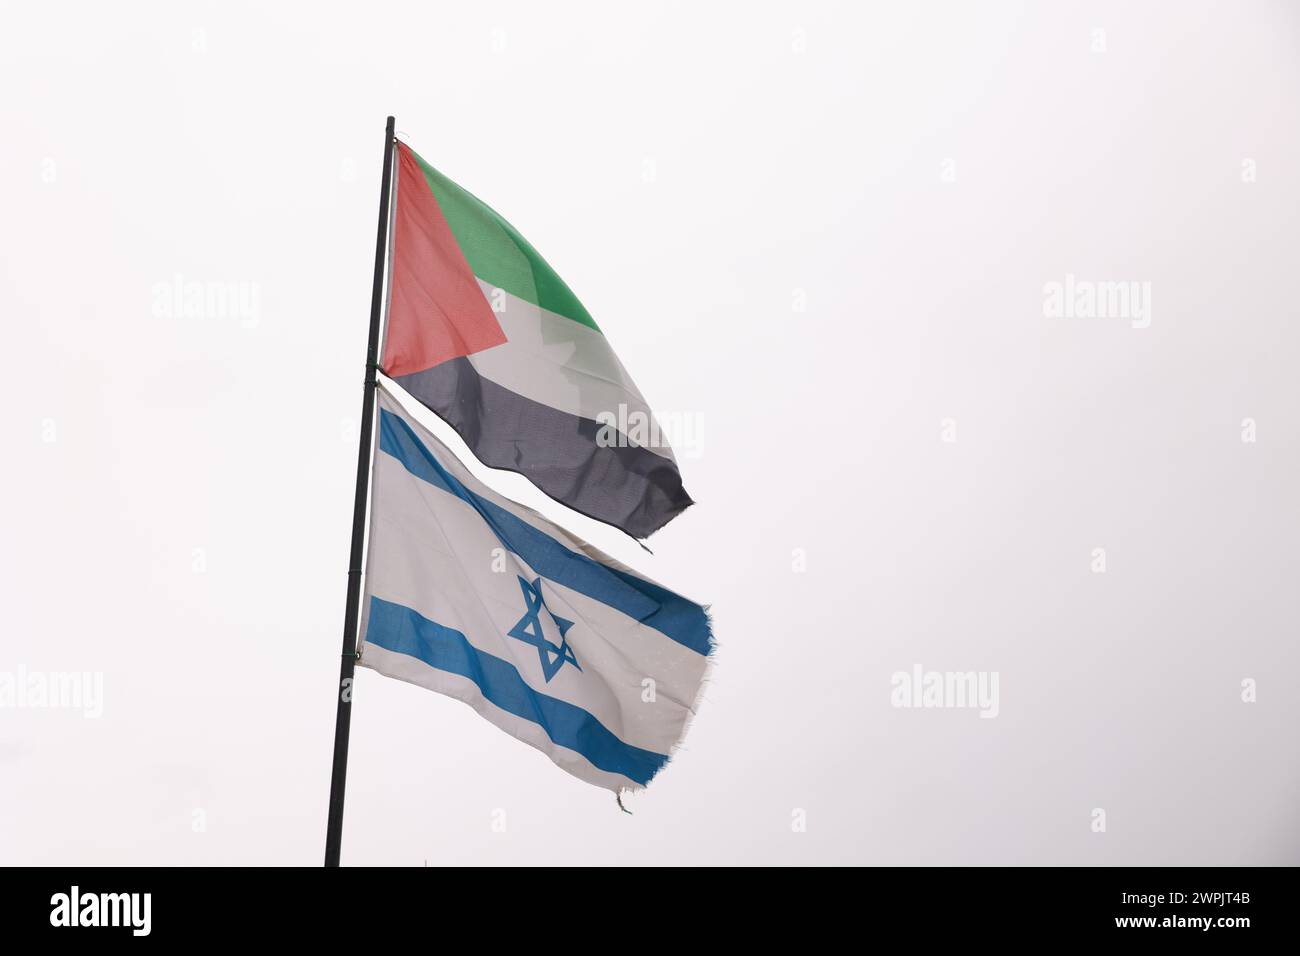 Una bandiera con una stella bianca e strisce blu sta sventolando accanto a un'altra bandiera. Le due bandiere sono di colori e dimensioni diversi Foto Stock